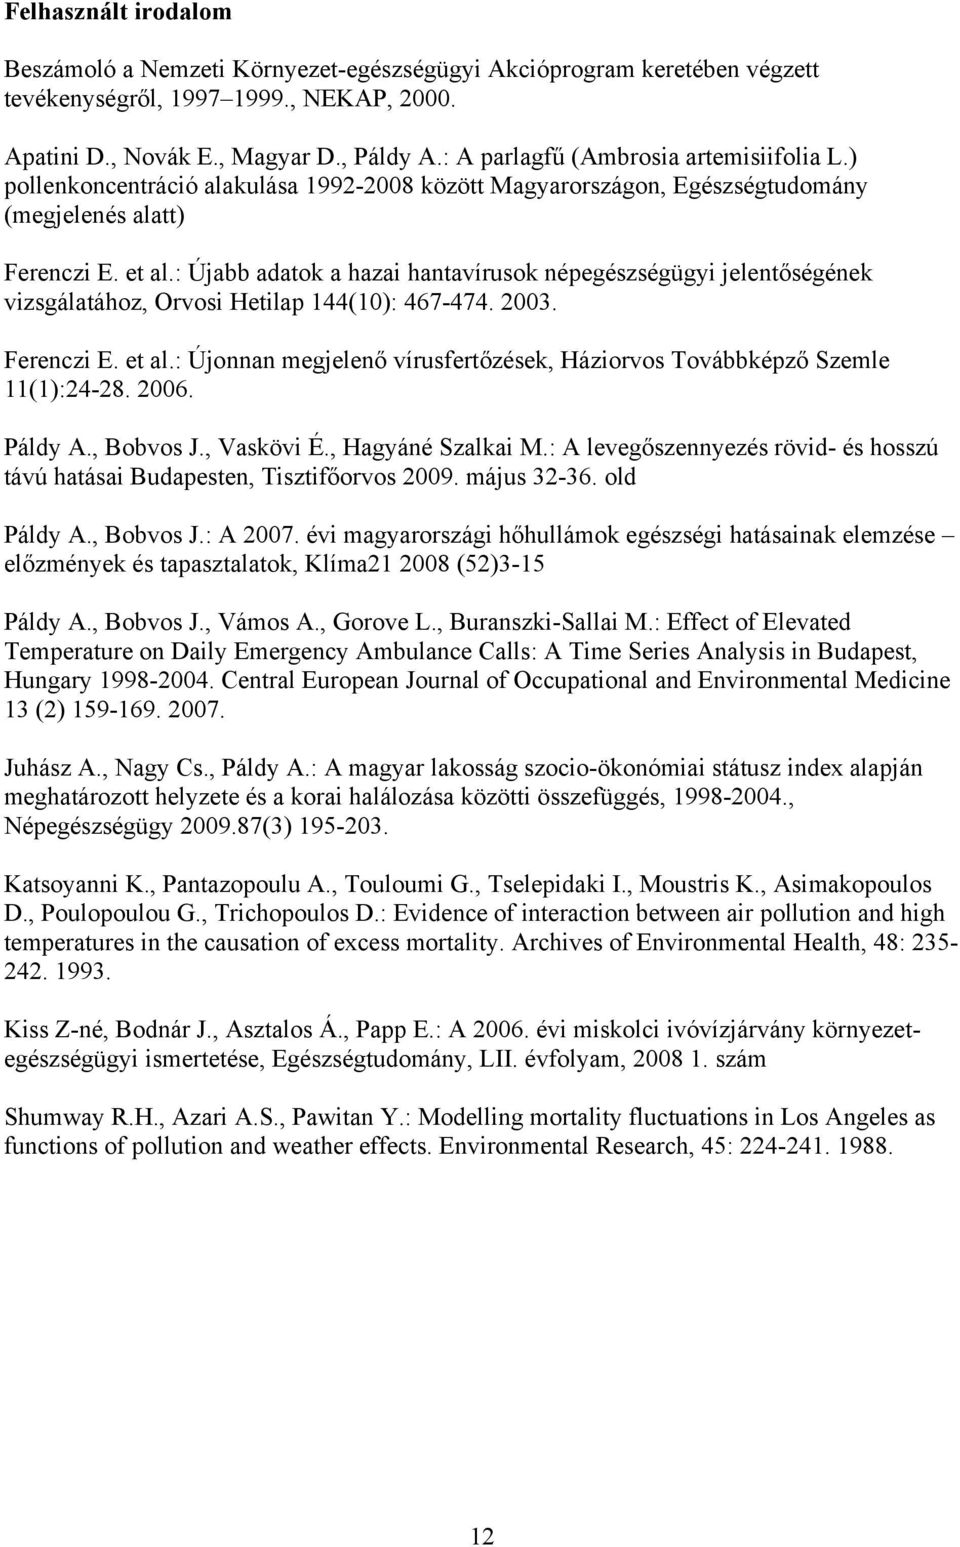 : Újabb adatok a hazai hantavírusok népegészségügyi jelentőségének vizsgálatához, Orvosi Hetilap 144(1): 467-474. 23. Ferenczi E. et al.